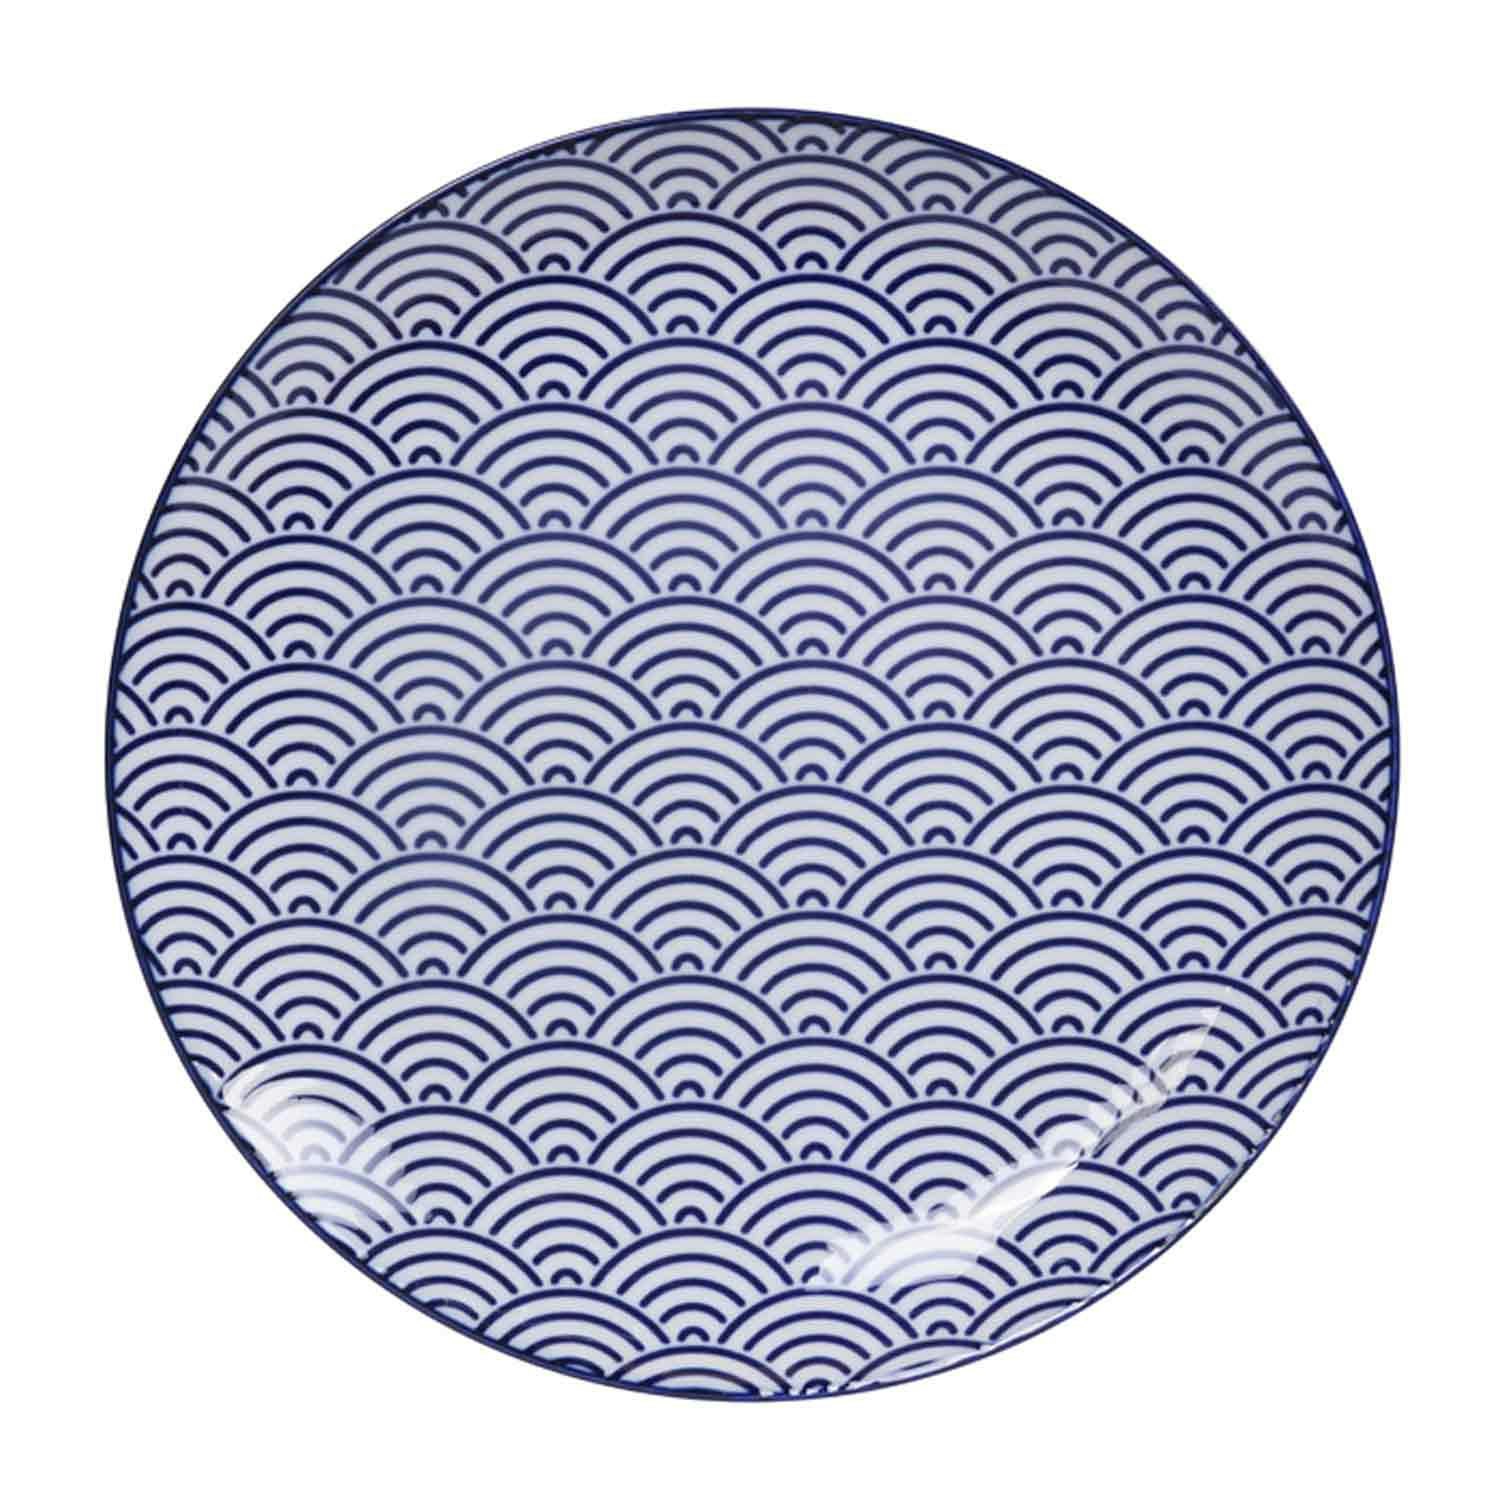 Tokyo Design-Nippon Blue Tallerken 25,7 cm, Wave